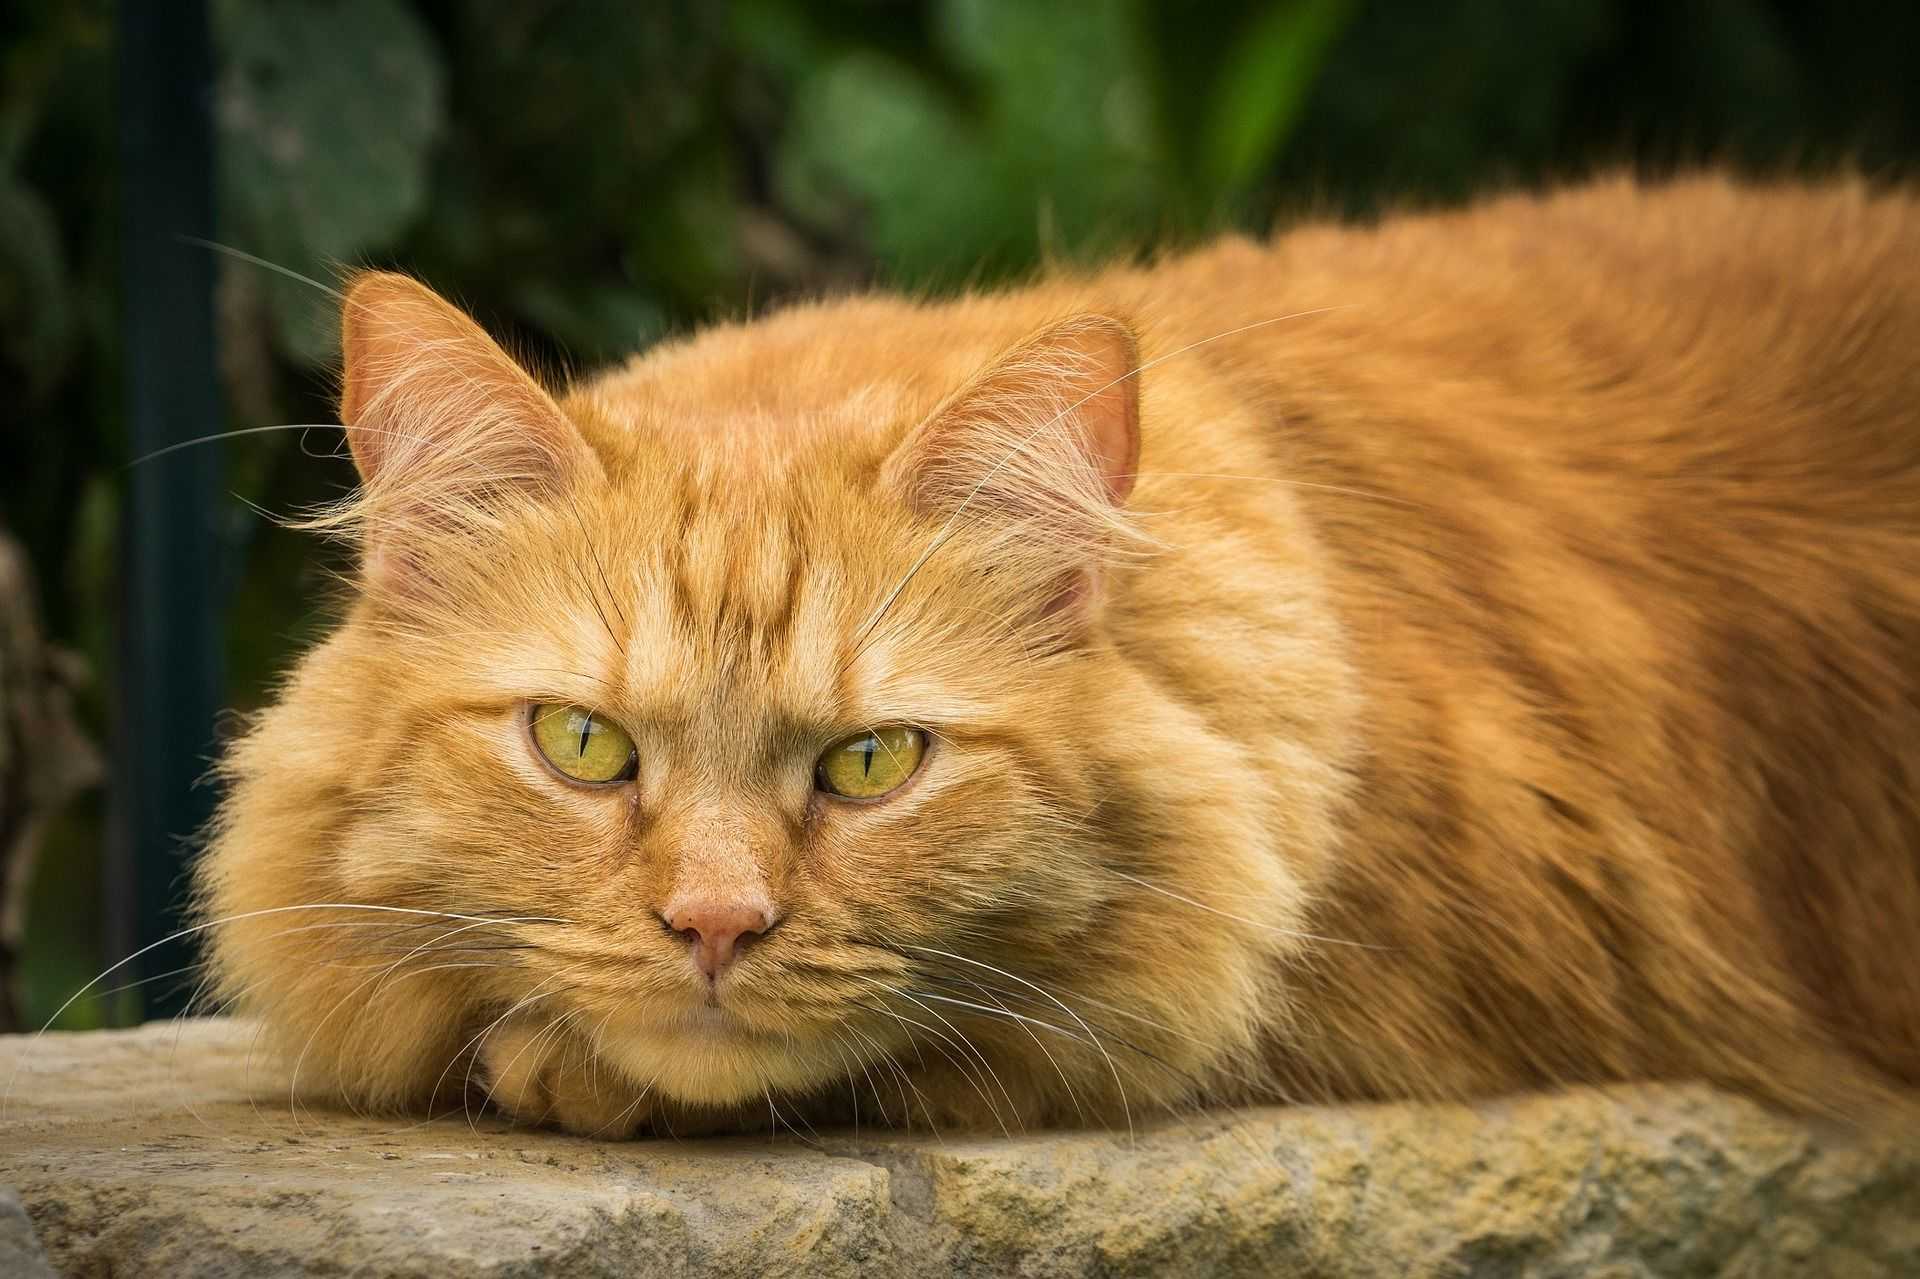 Рыжие кошки очень популярны И неудивительно ‒ этот распространённый кошачий окрас радует глаз и поднимает настроение Рыжики часто встречаются на улицах, но их можно увидеть и на любой кошачьей выставке